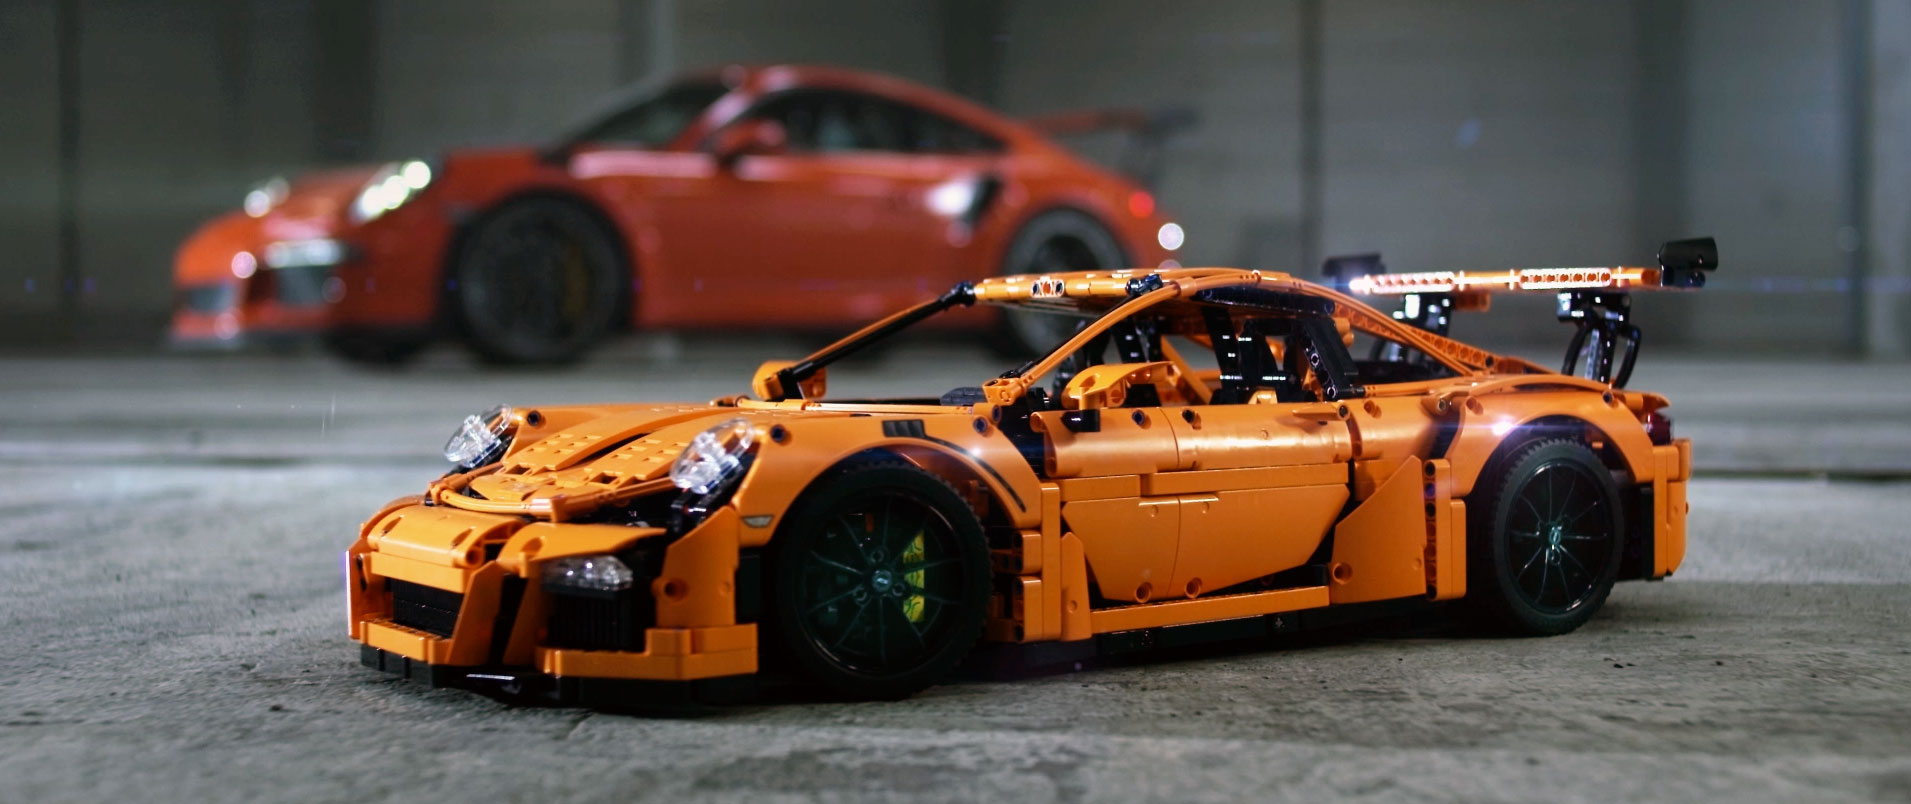 Brickfinder Win A LEGO Technic Porsche 911 GT3!